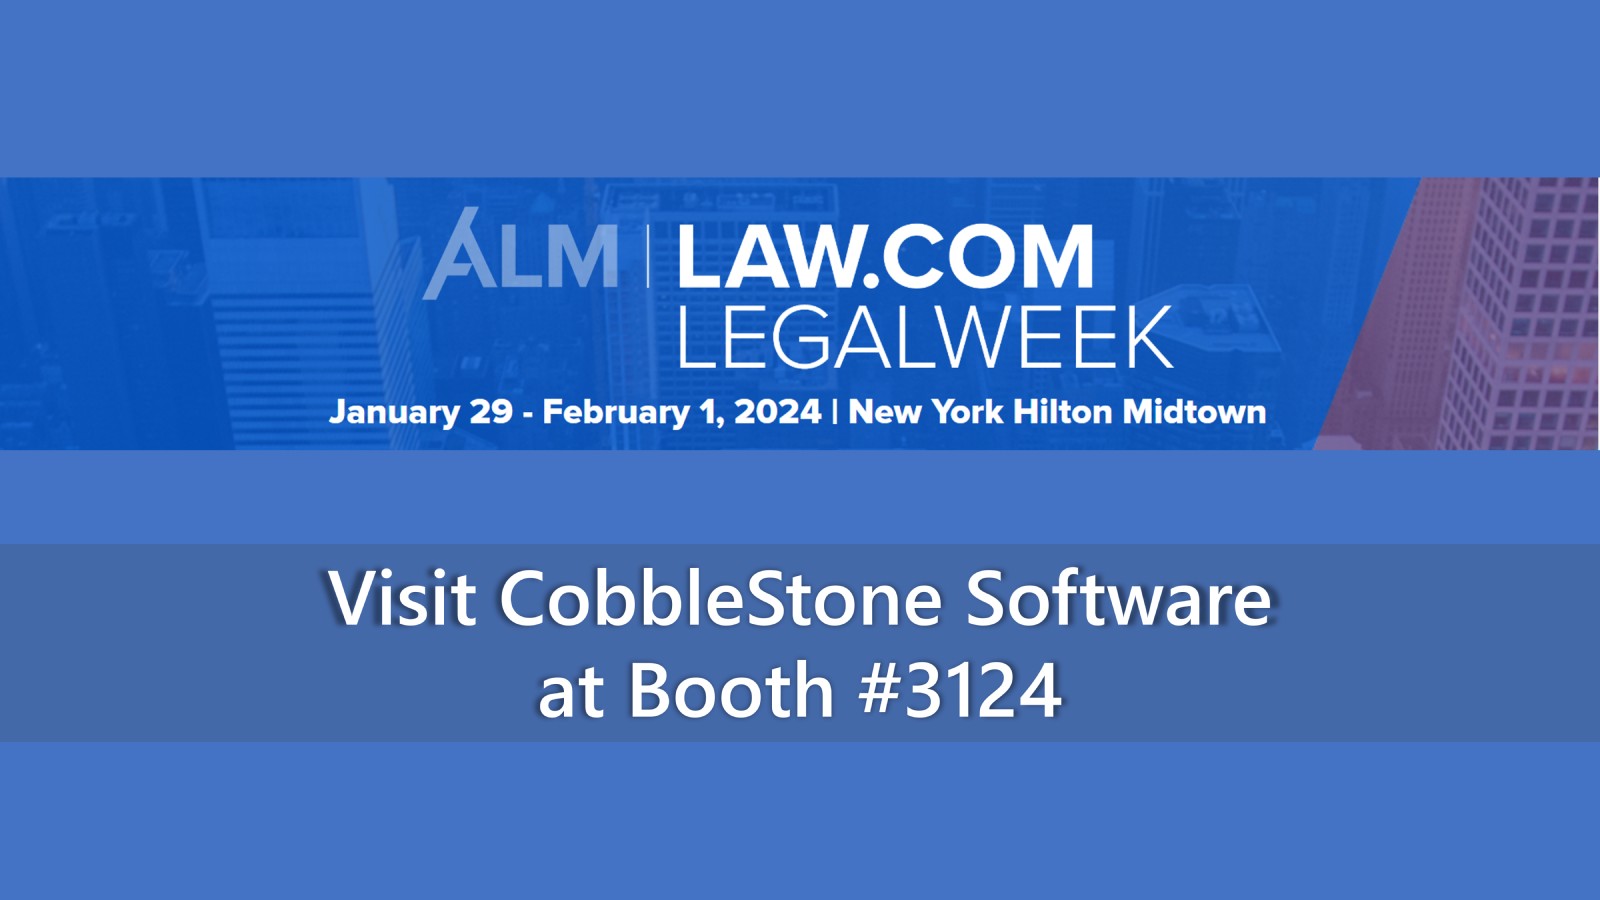 ALM | Law.com LegalWeek 2024